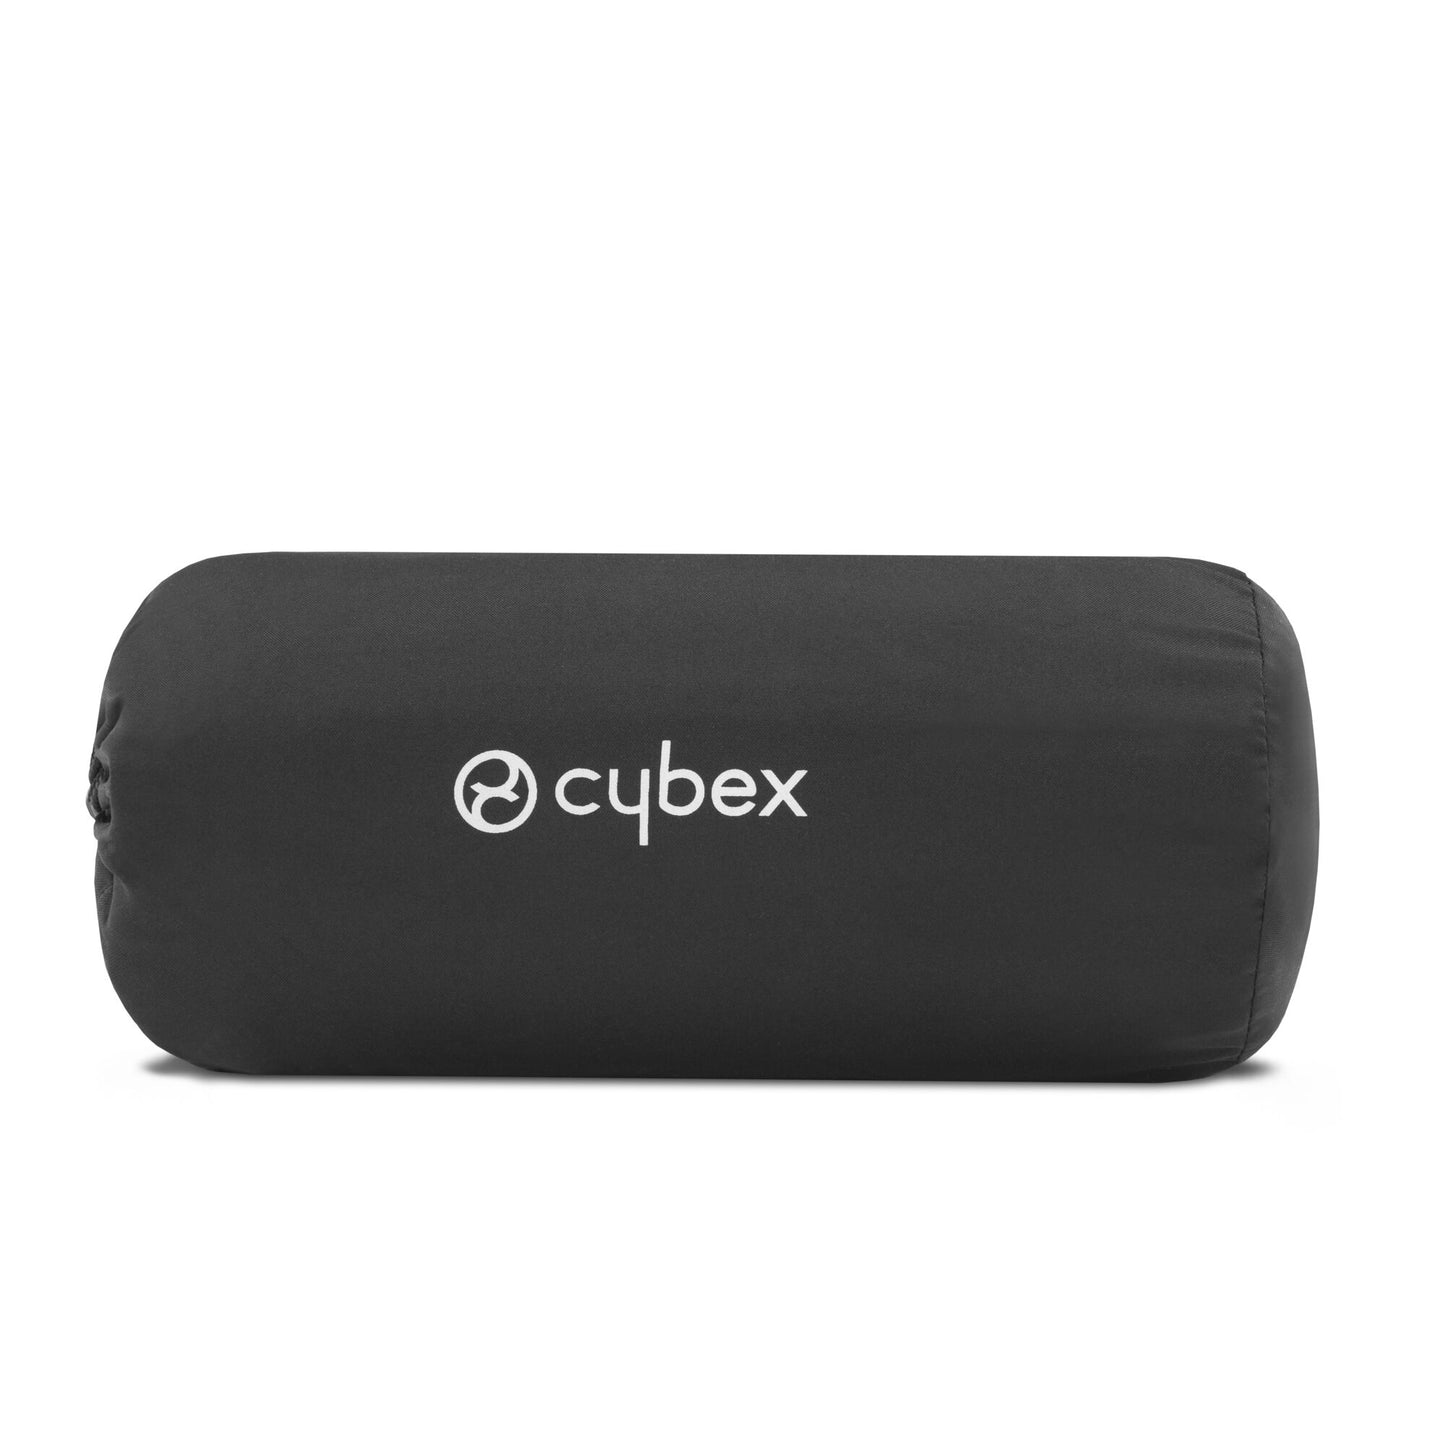 Cybex Travel Bag - Coya/Orfeo/Beezy/Eezy S Range